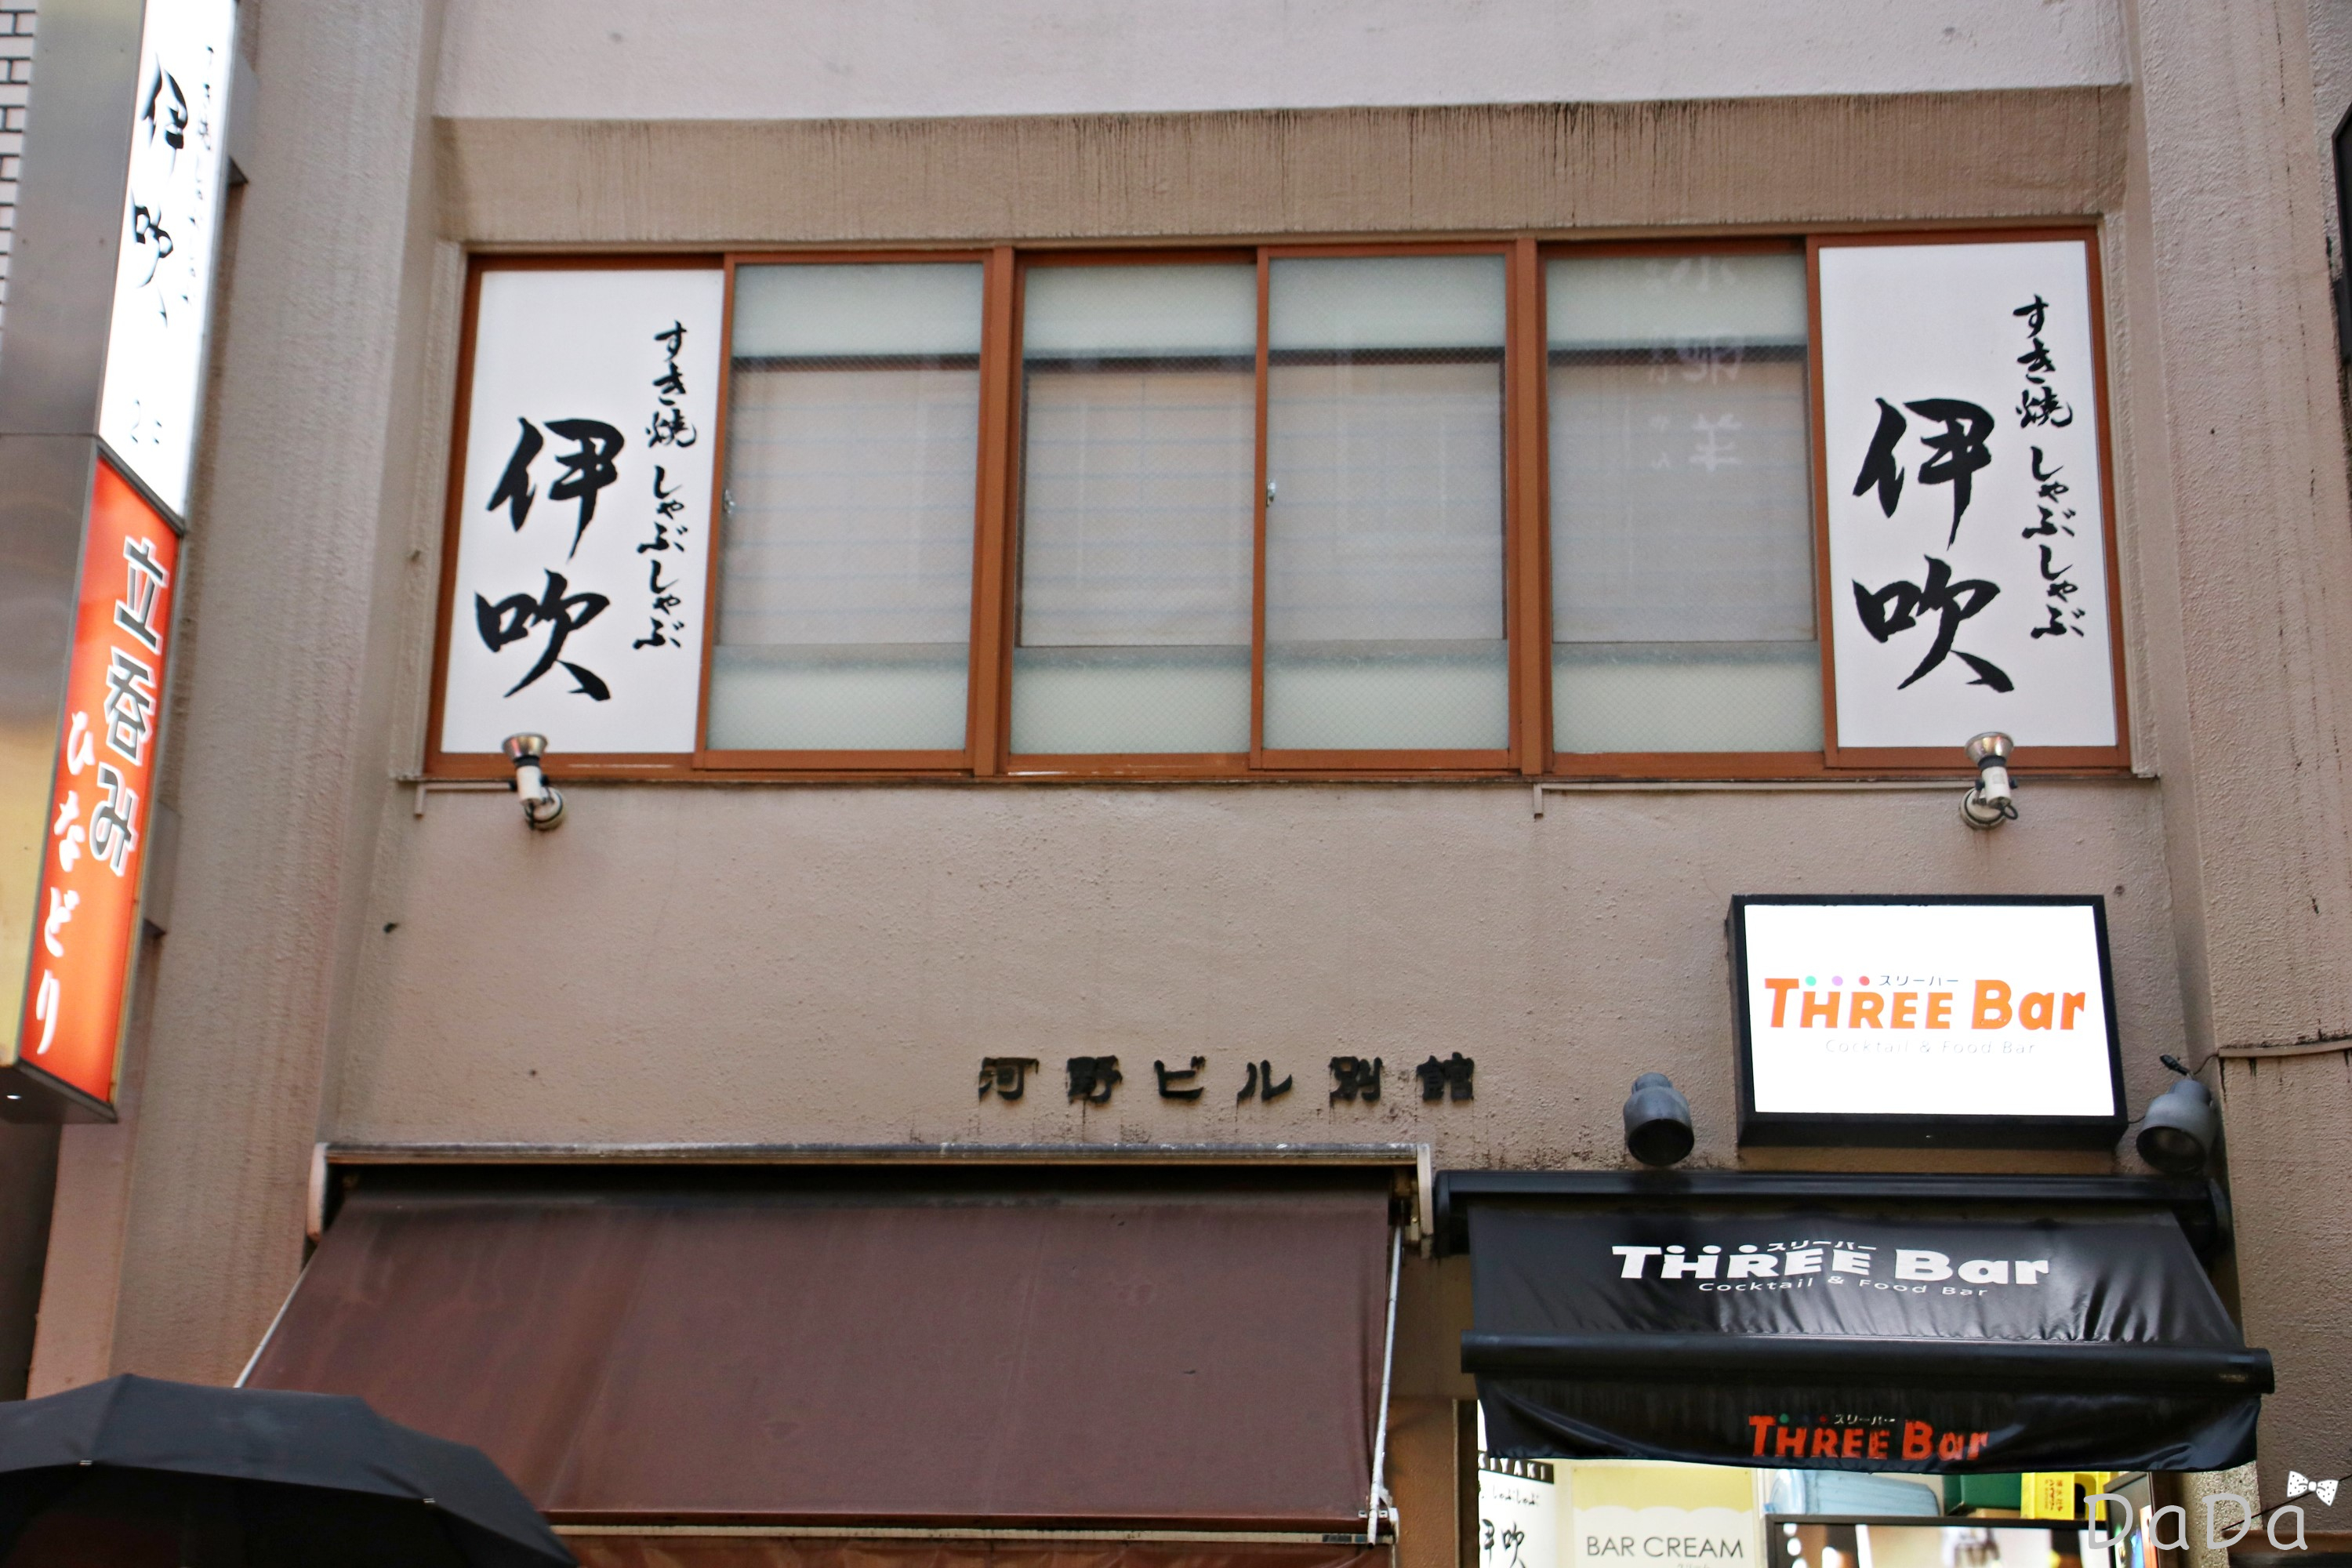 伊吹（Ibuki）  新宿寿喜烧美食餐厅，人气火爆到不提前预约绝对吃不上的地步。  至少在访问前一天